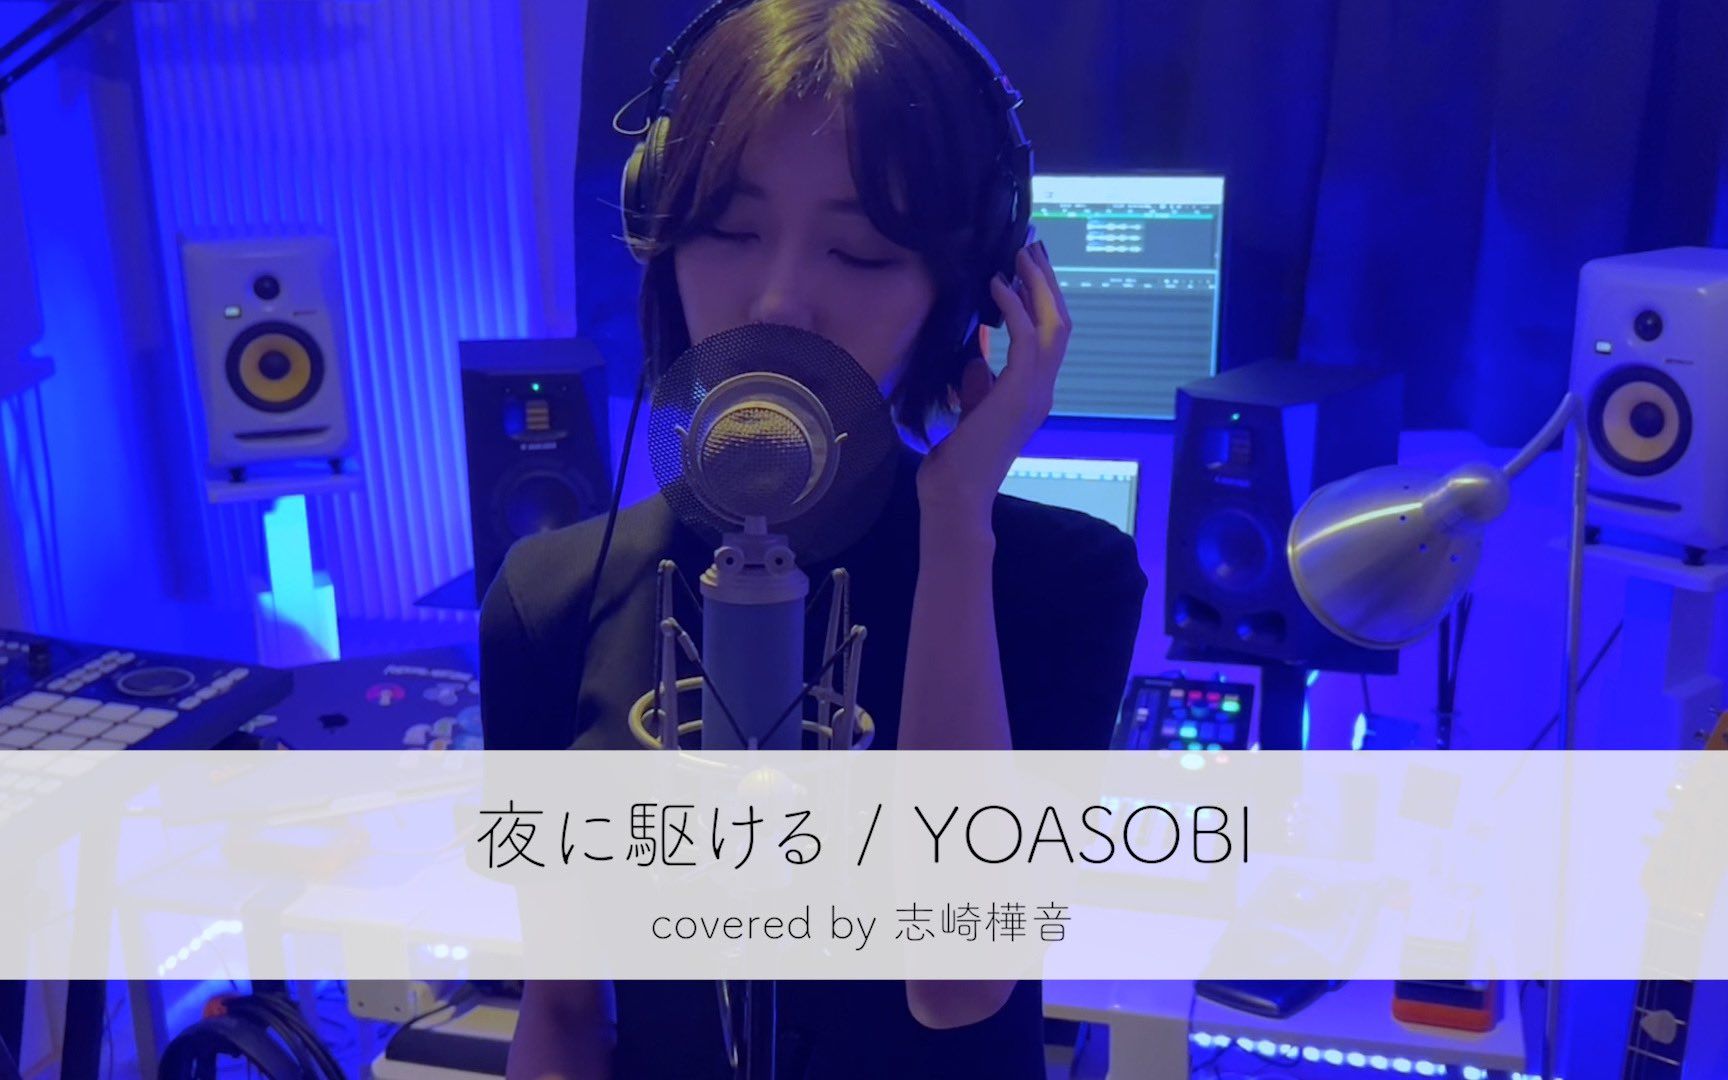 『夜に駆ける / YOASOBI』Covered by 志崎樺音